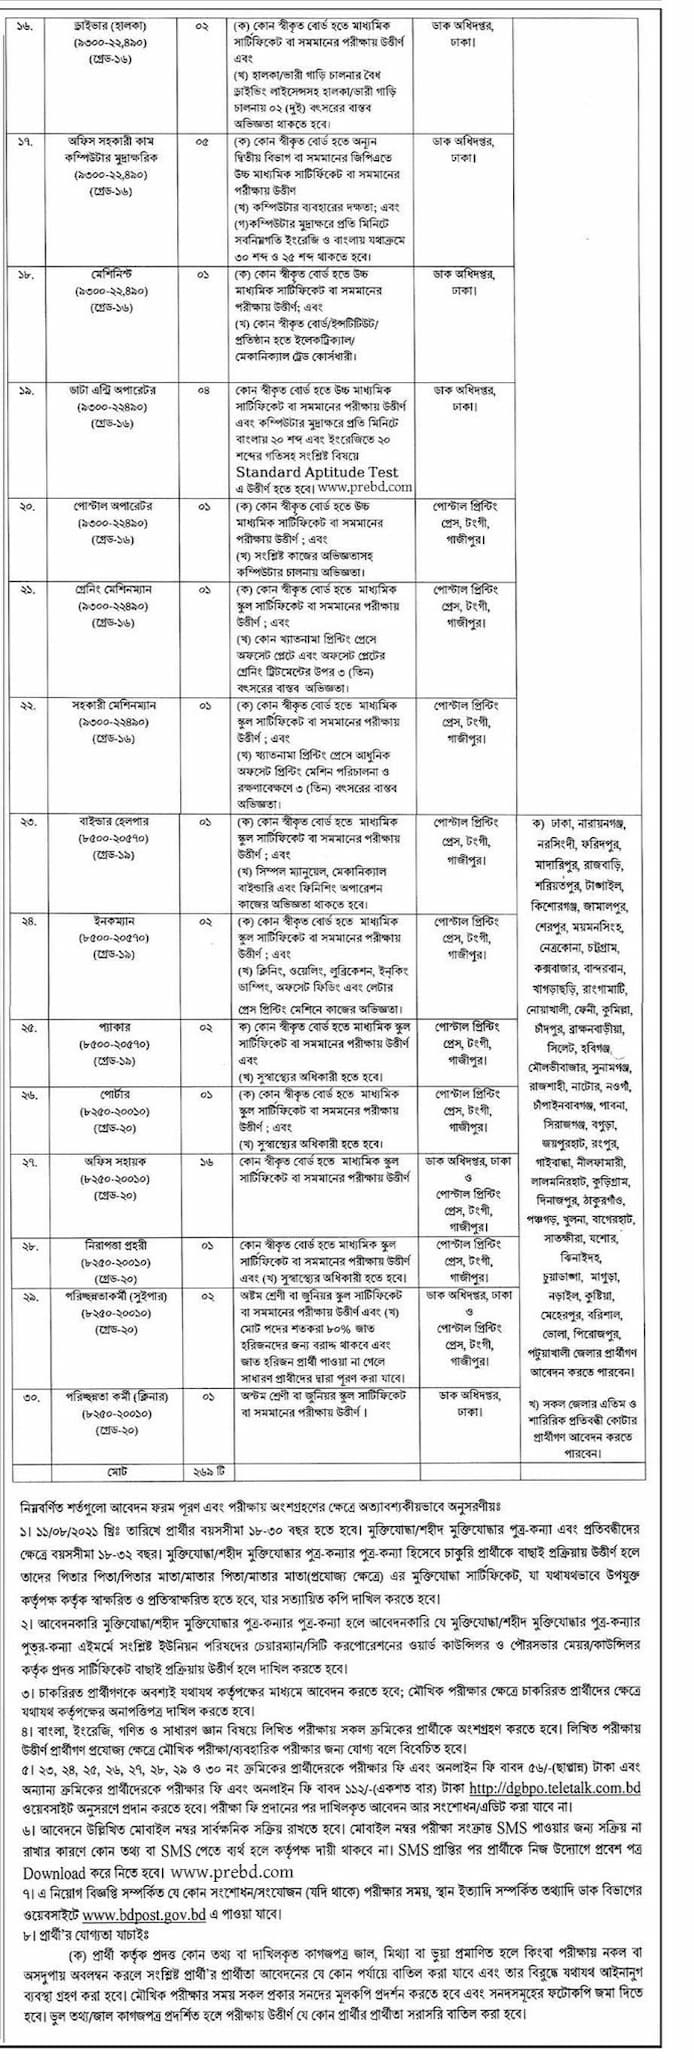 বাংলাদেশ ডাক বিভাগ নিয়োগ বিজ্ঞপ্তি ২০২১ - বাংলাদেশ পোস্ট অফিস নিয়োগ বিজ্ঞপ্তি ২০২১ - Bangladesh Post Office Recruitment Circular 2021